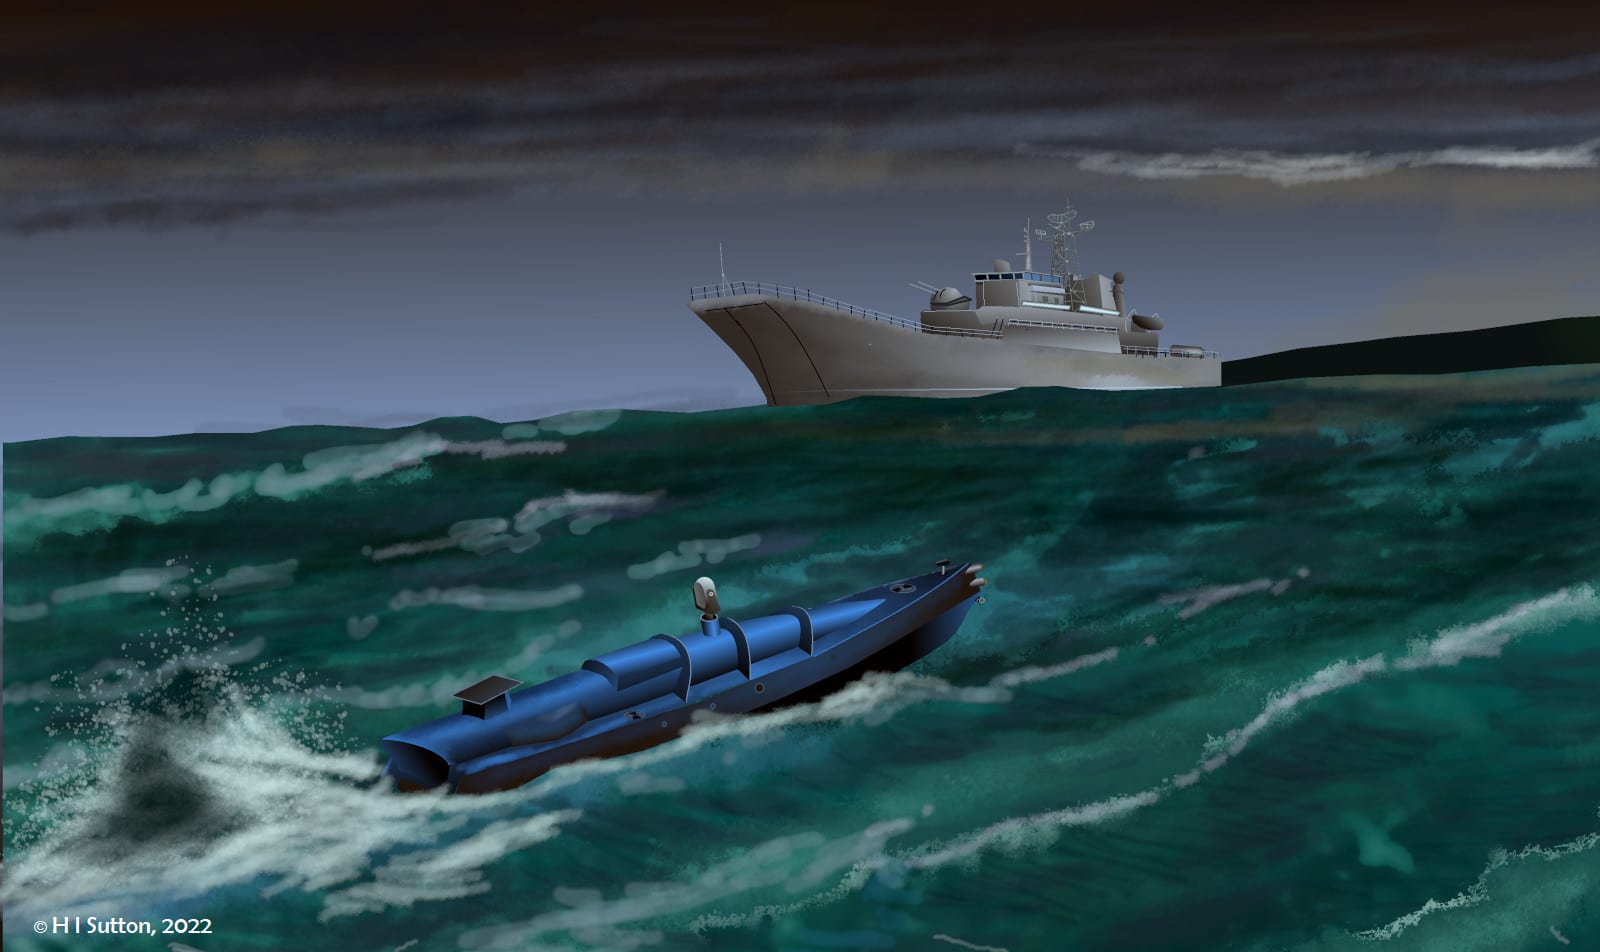 Ілюстрація з невстановленим морським безпілотним апаратом